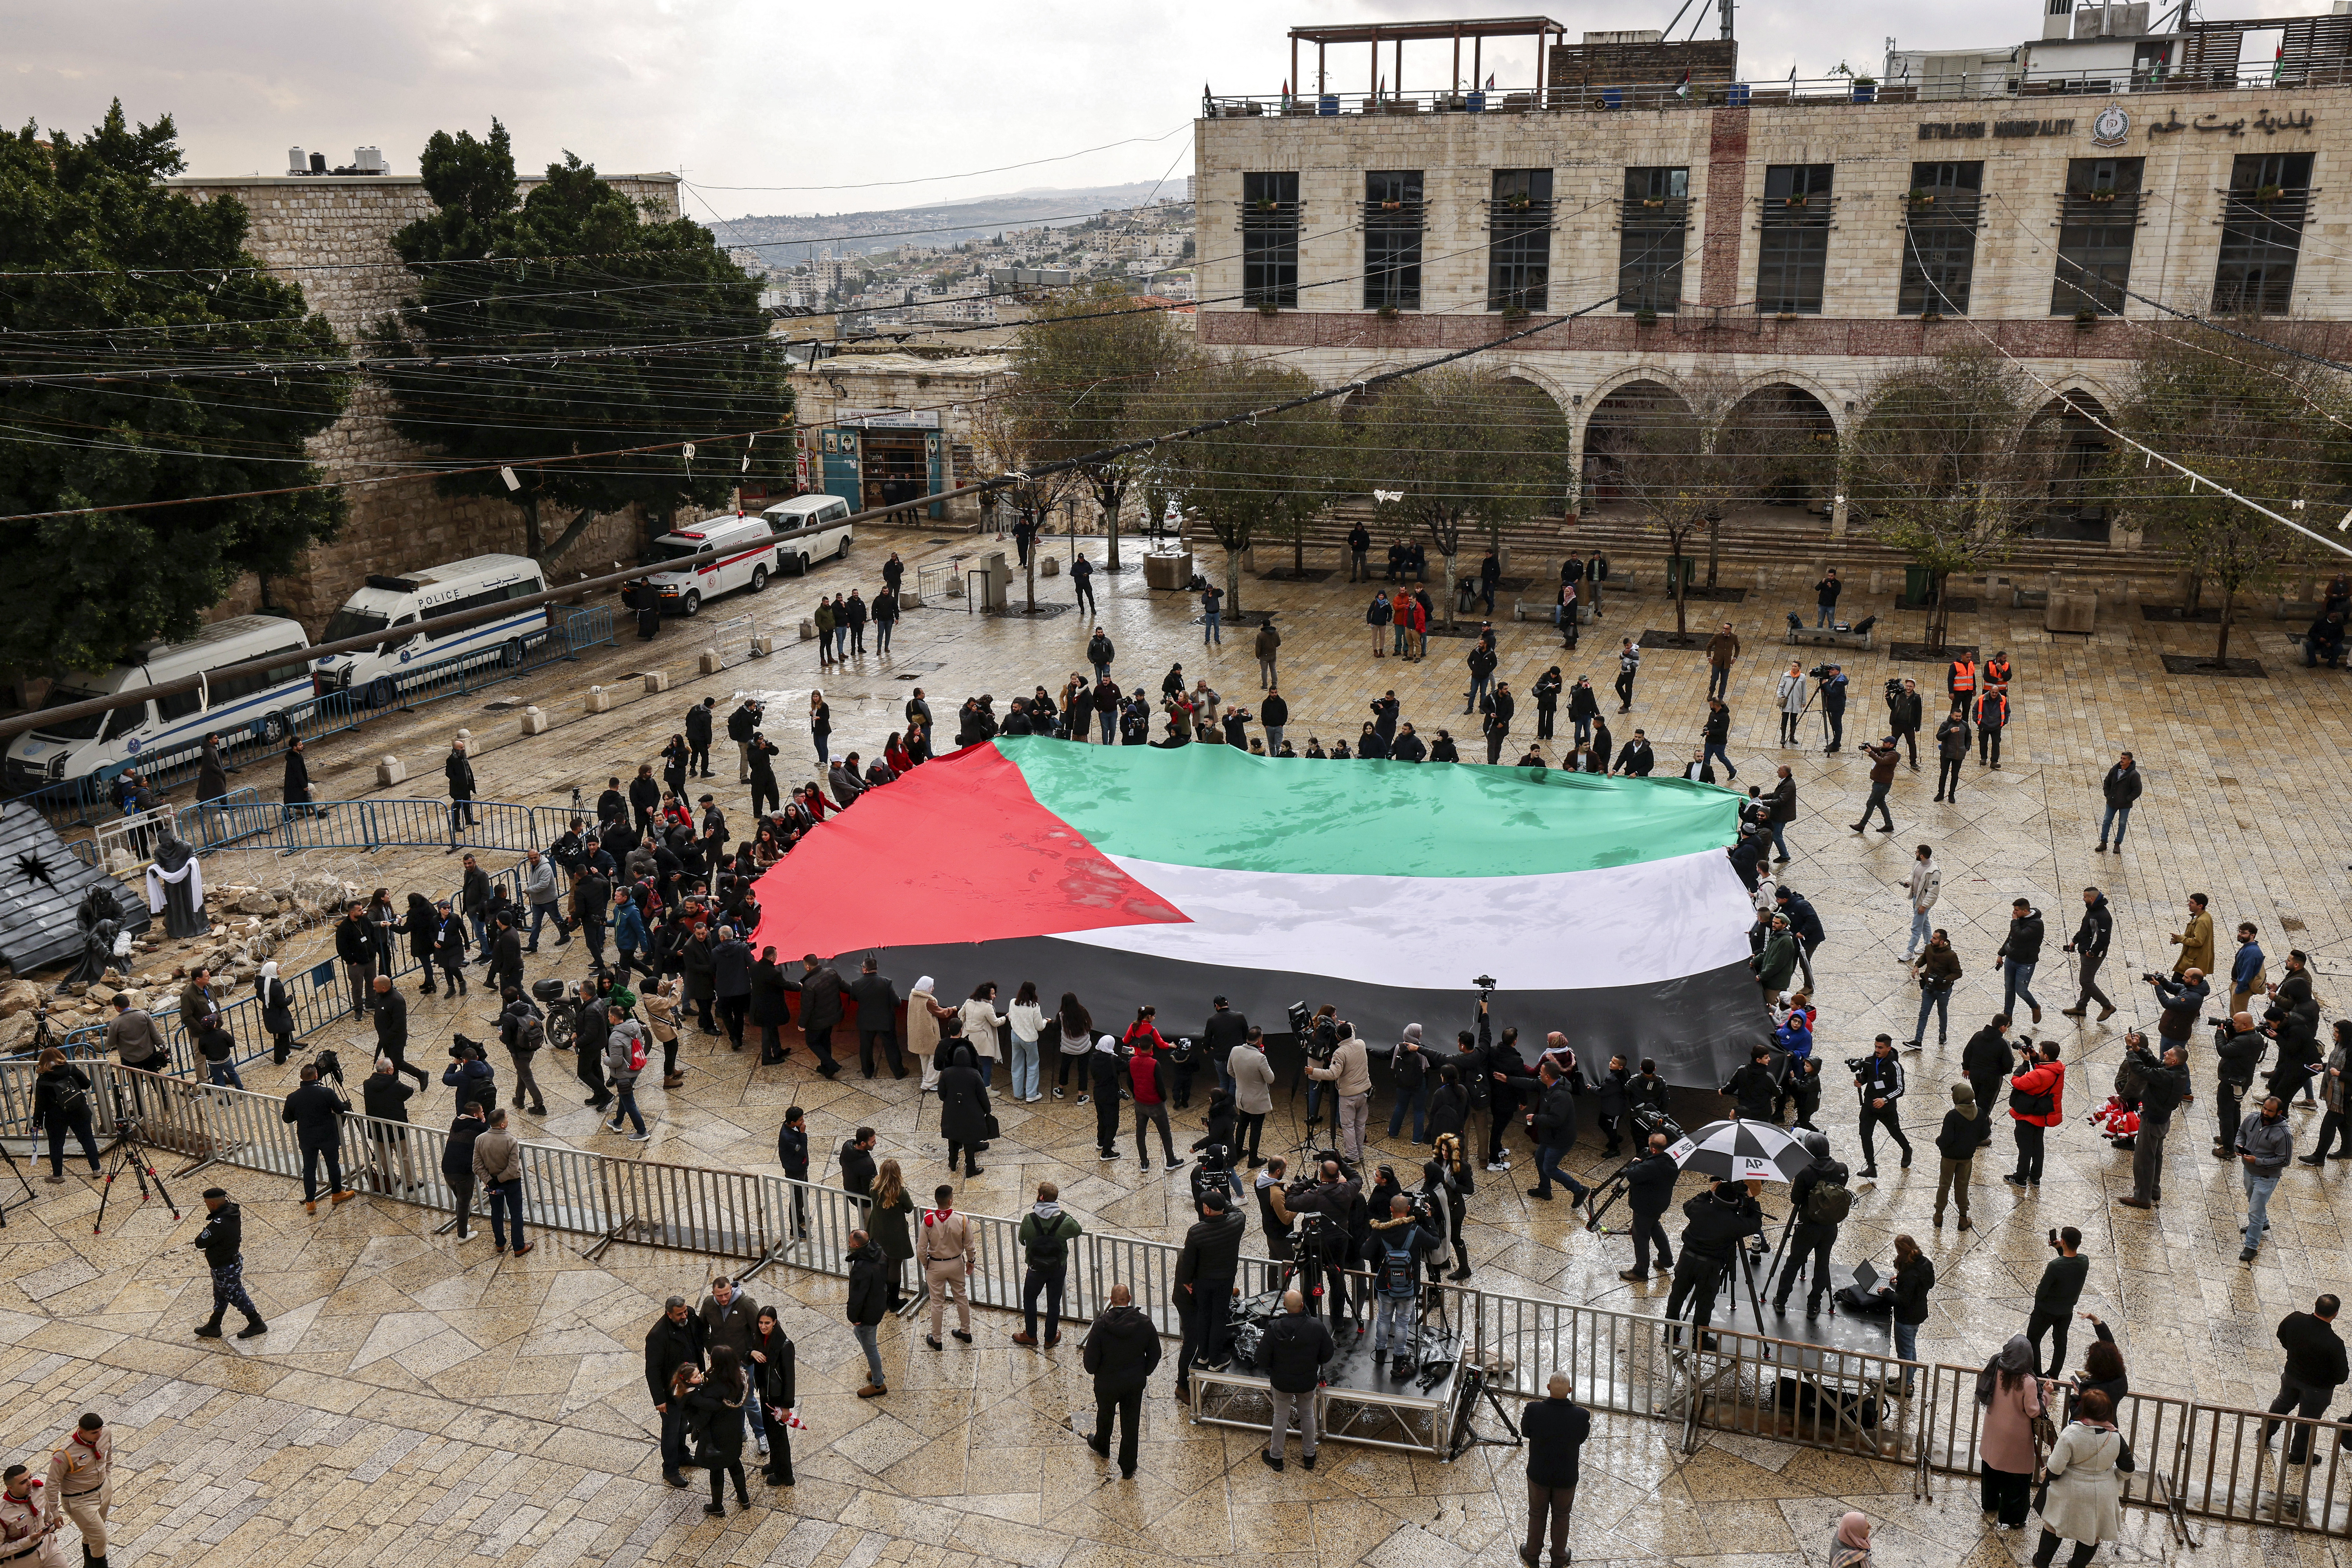 Auf dem Krippenplatz vor der Geburtskirche wird feierlich eine riesige palästinensische Flagge entfaltet – normalerweise voller Dekorationen und festlicher Feierlichkeiten